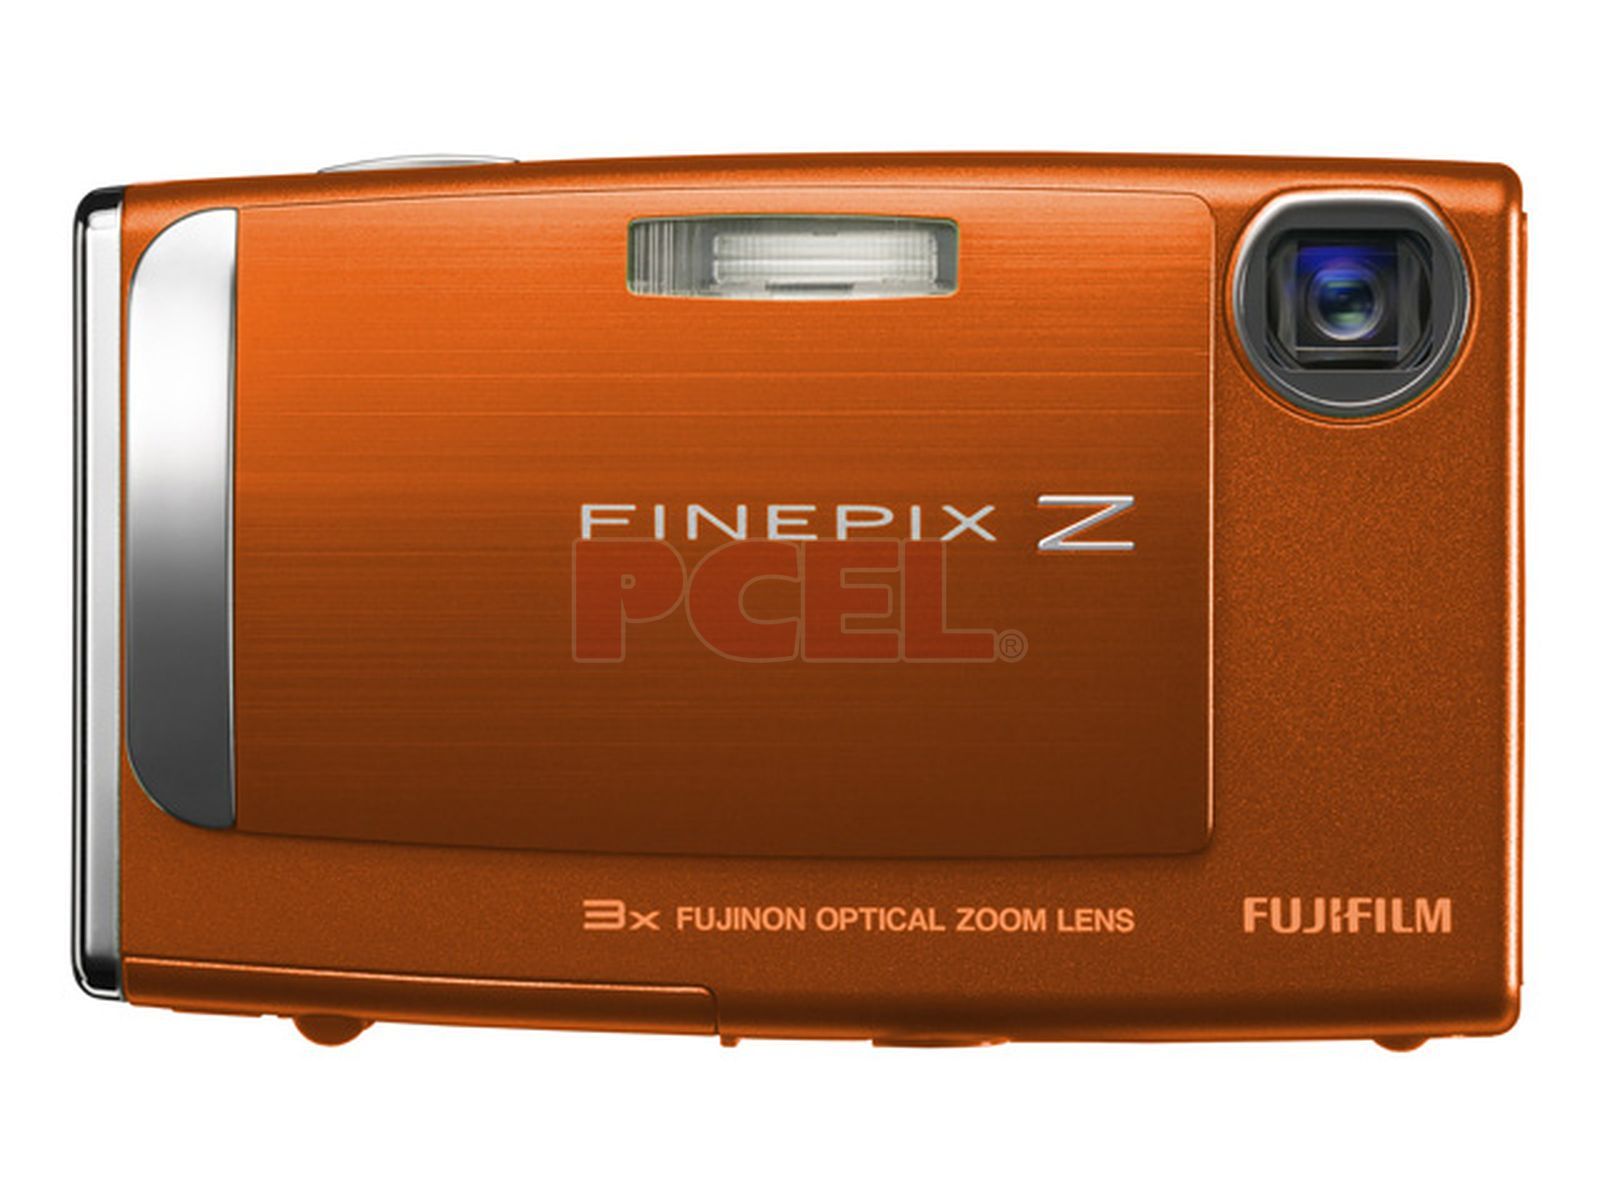 empujar cielo Microordenador Cámara Fotográfica Digital Fujifilm FinePix Z10fd, 7.2MP. Color Naranja